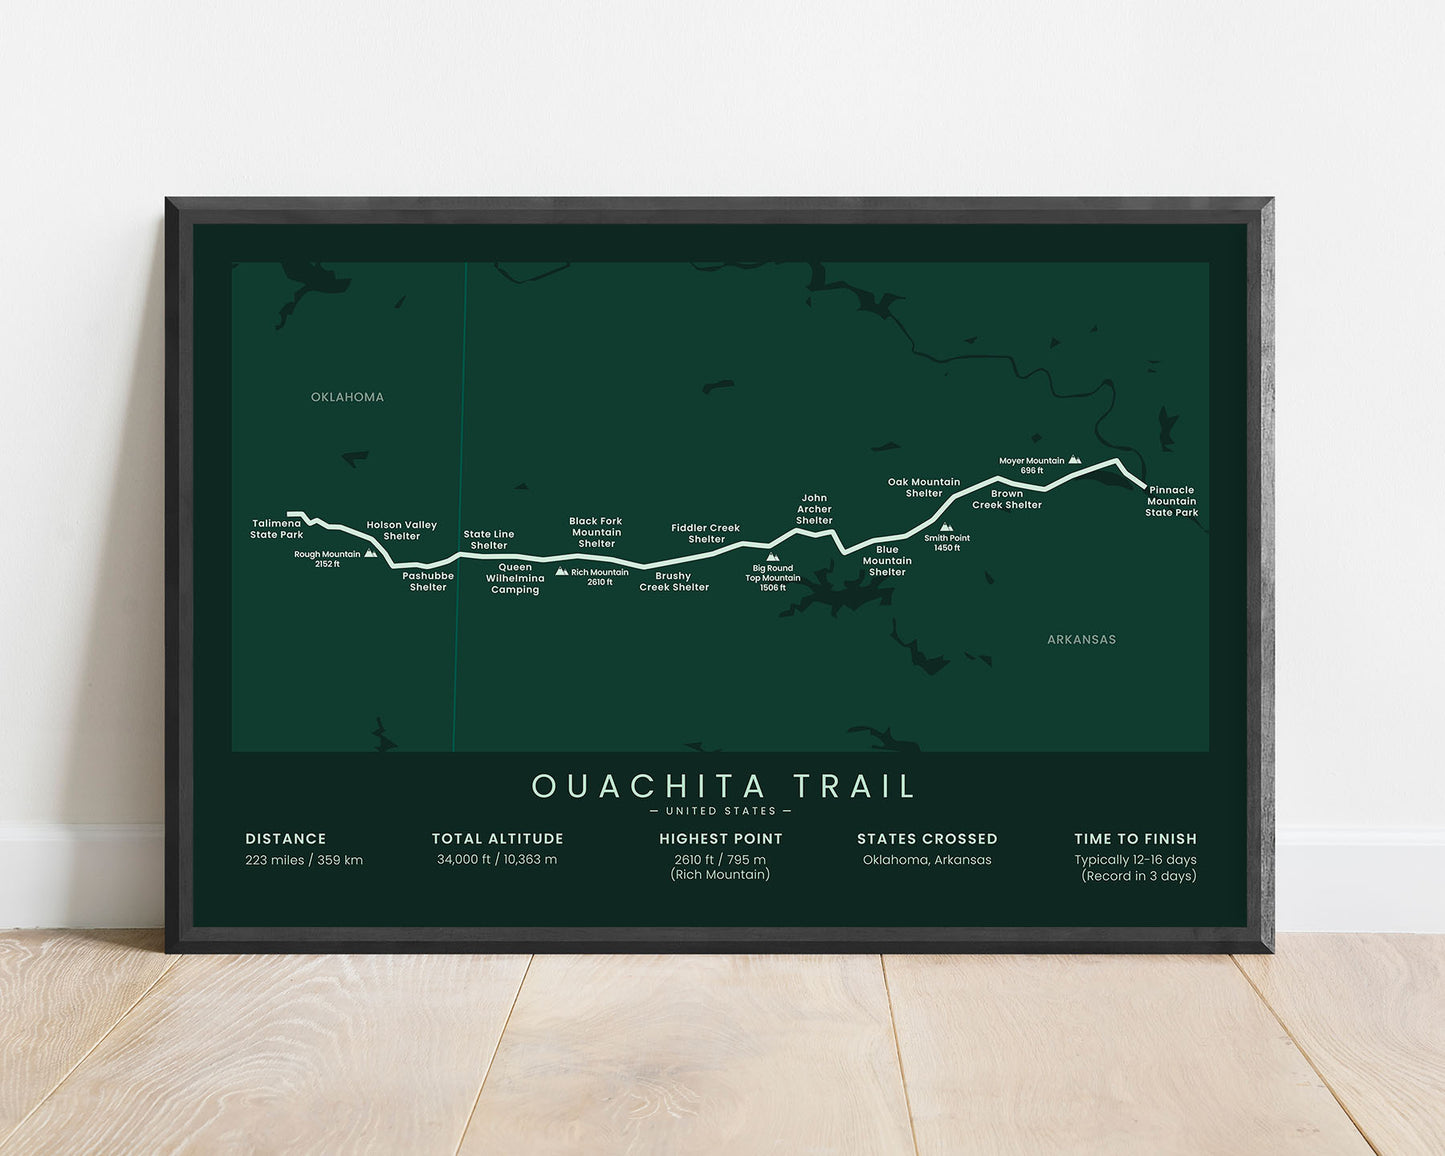 Ouachita trail (Ouachita Mountains) route print with green background